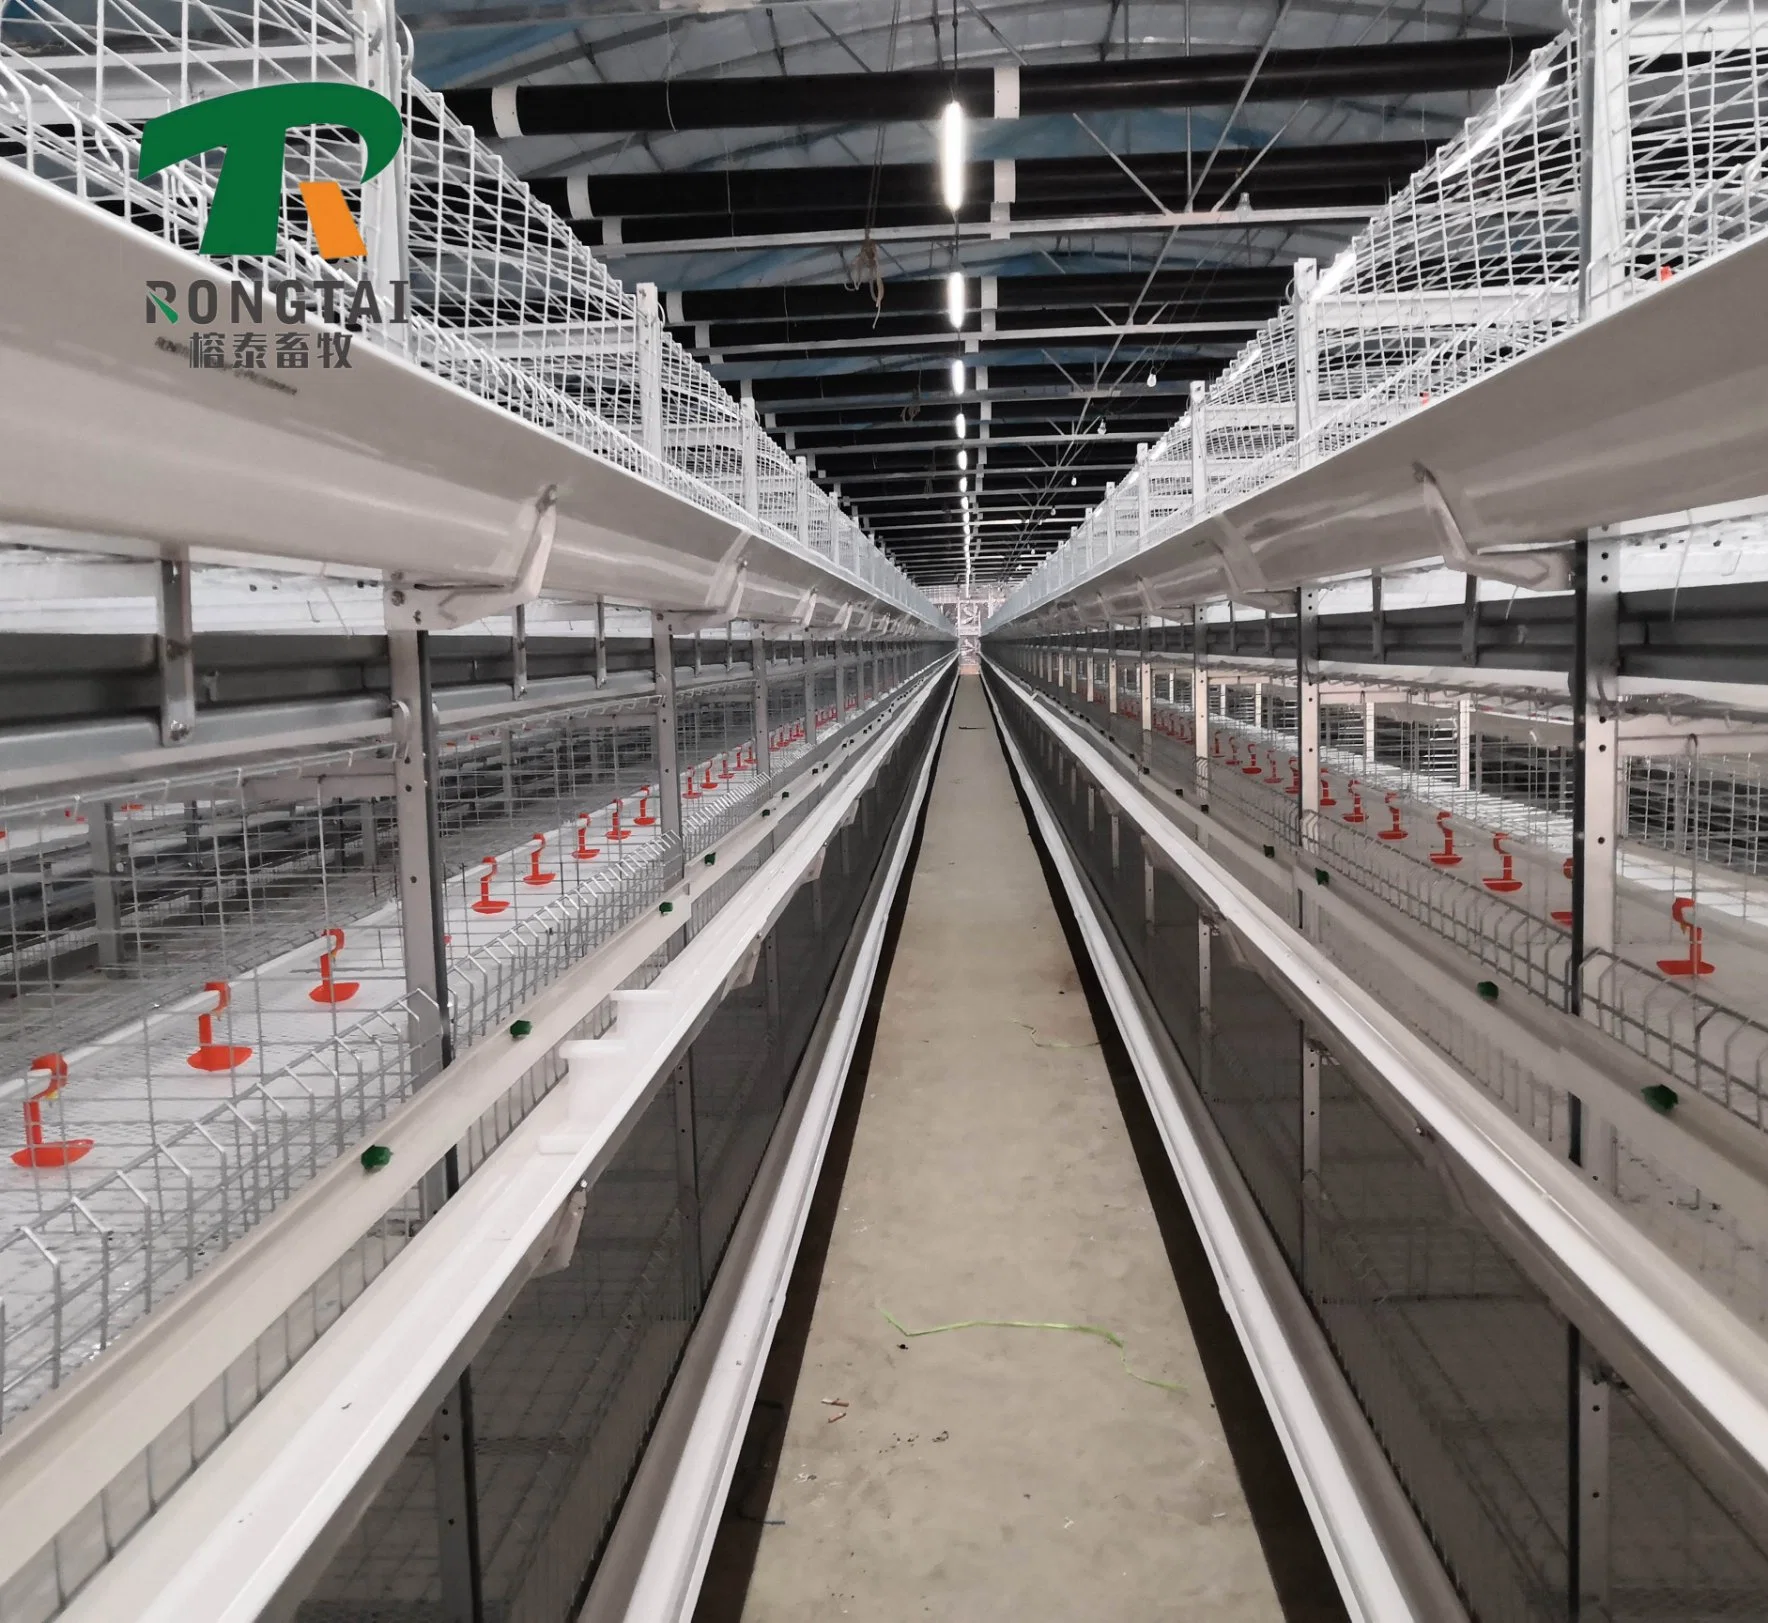 Heißer Verkauf Automatische Egg Legen Fütterungssystem Zucht Batterie Geflügel Farm Layer Broiler Vögel Henne Hühnerkäfig Coop Maschine